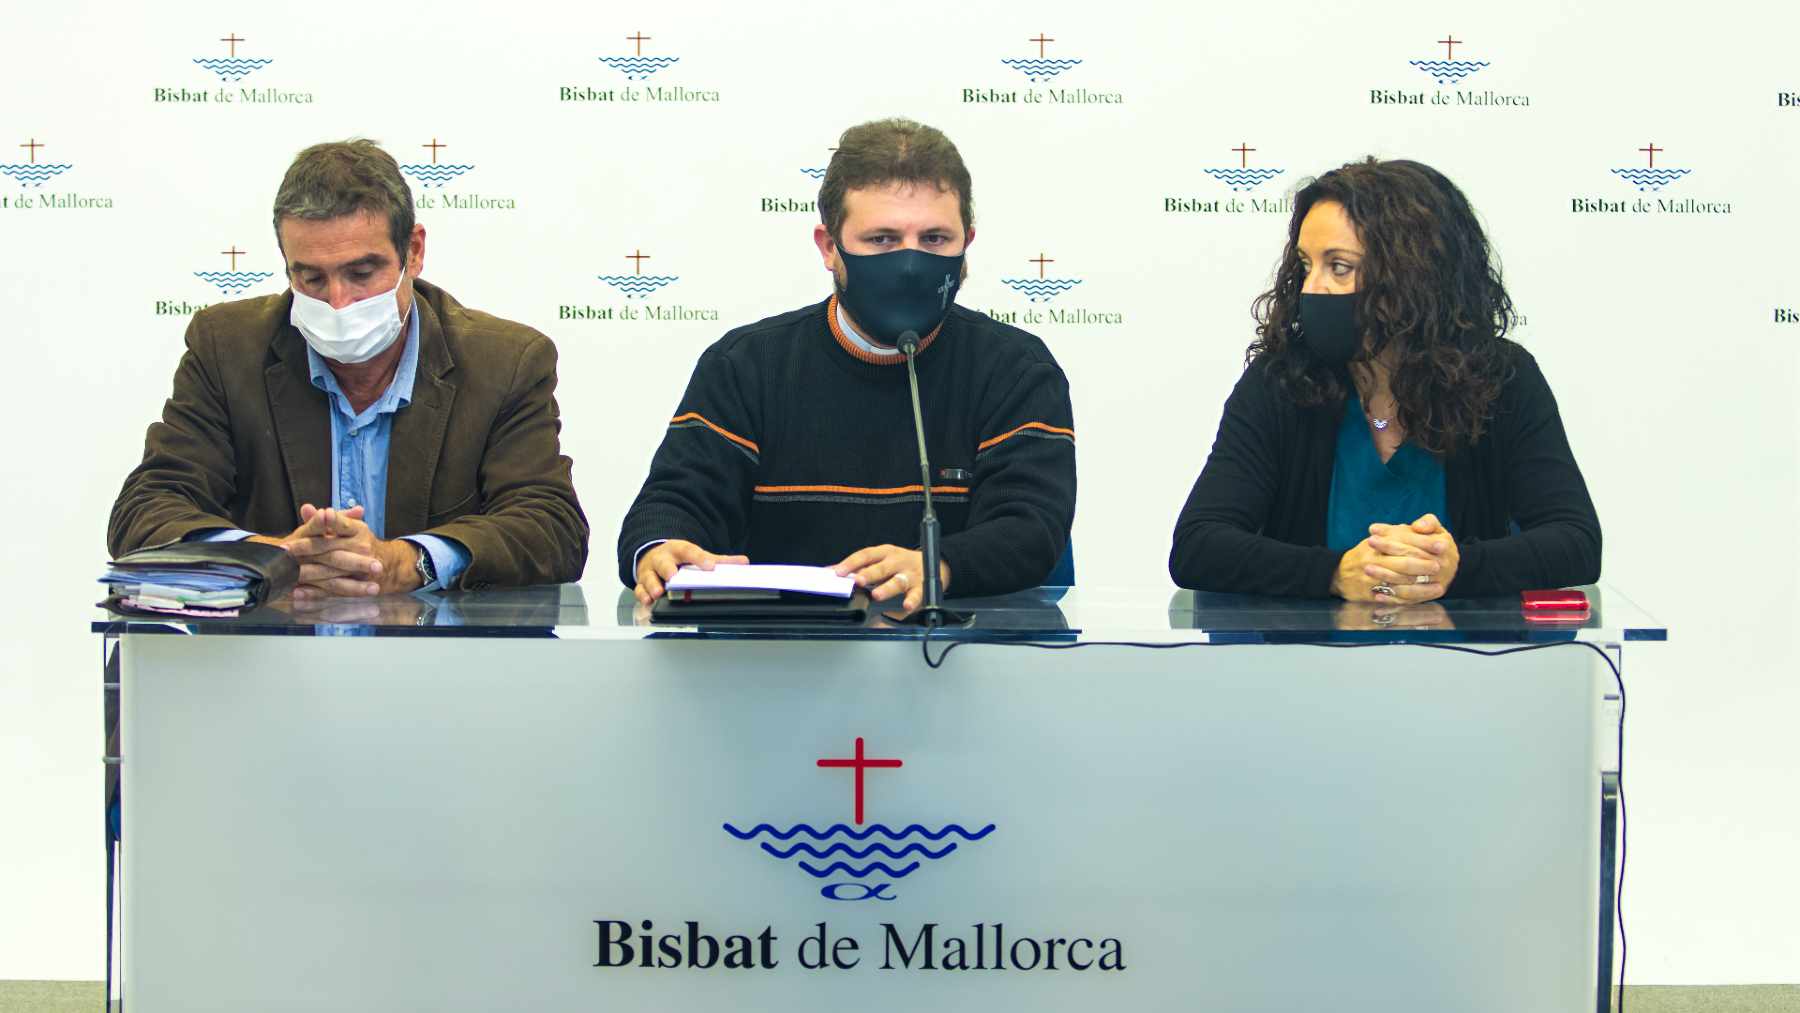 Presentación del informe sobre el patrimonio de la Diócesis de Mallorca.